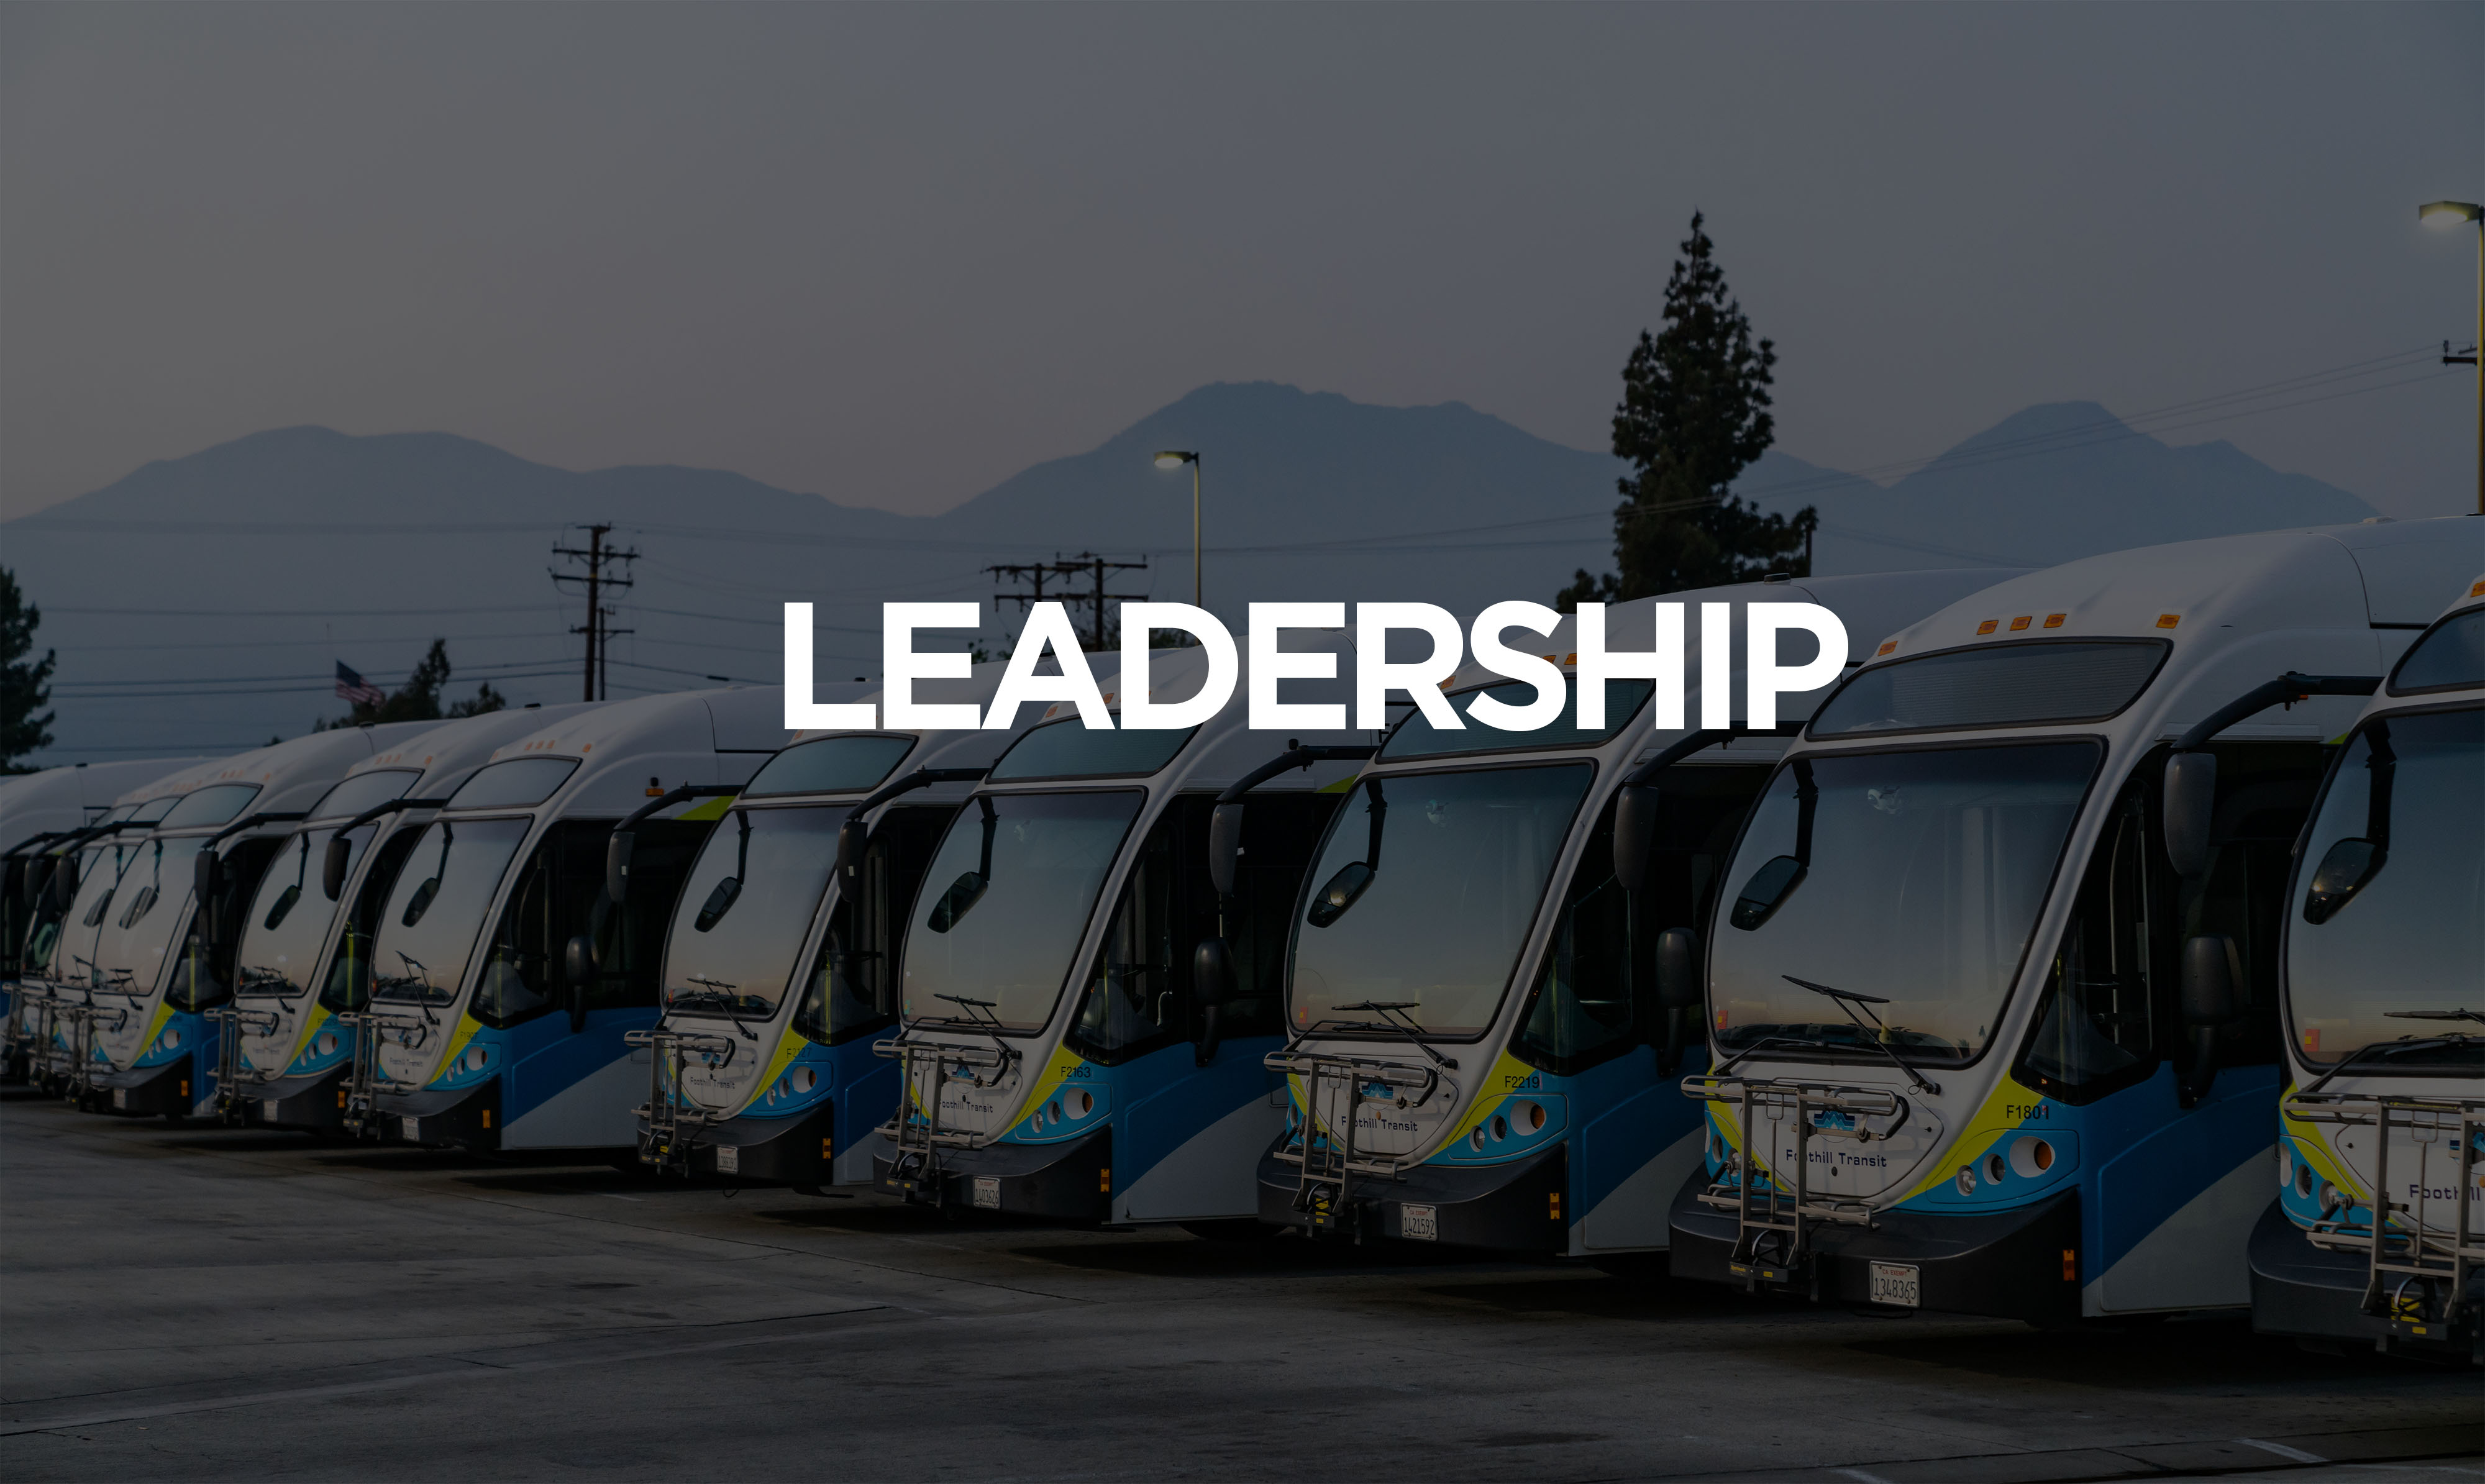 10 xe buýt đậu theo hàng được hiển thị từ phía trước với sự lãnh đạo